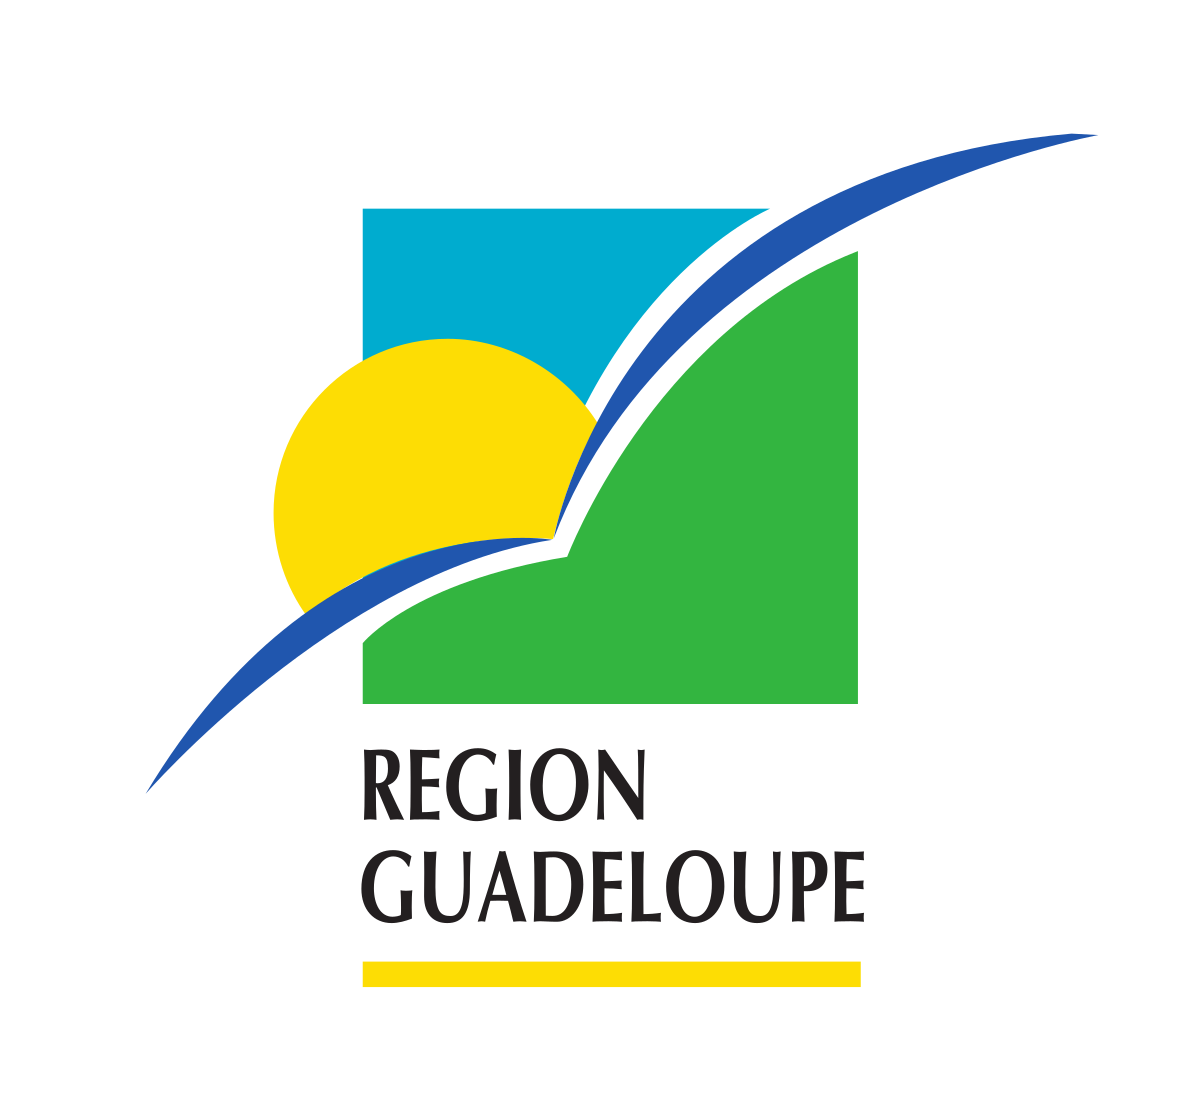 Logo_region-guadeloupe.svg.png (61 KB)